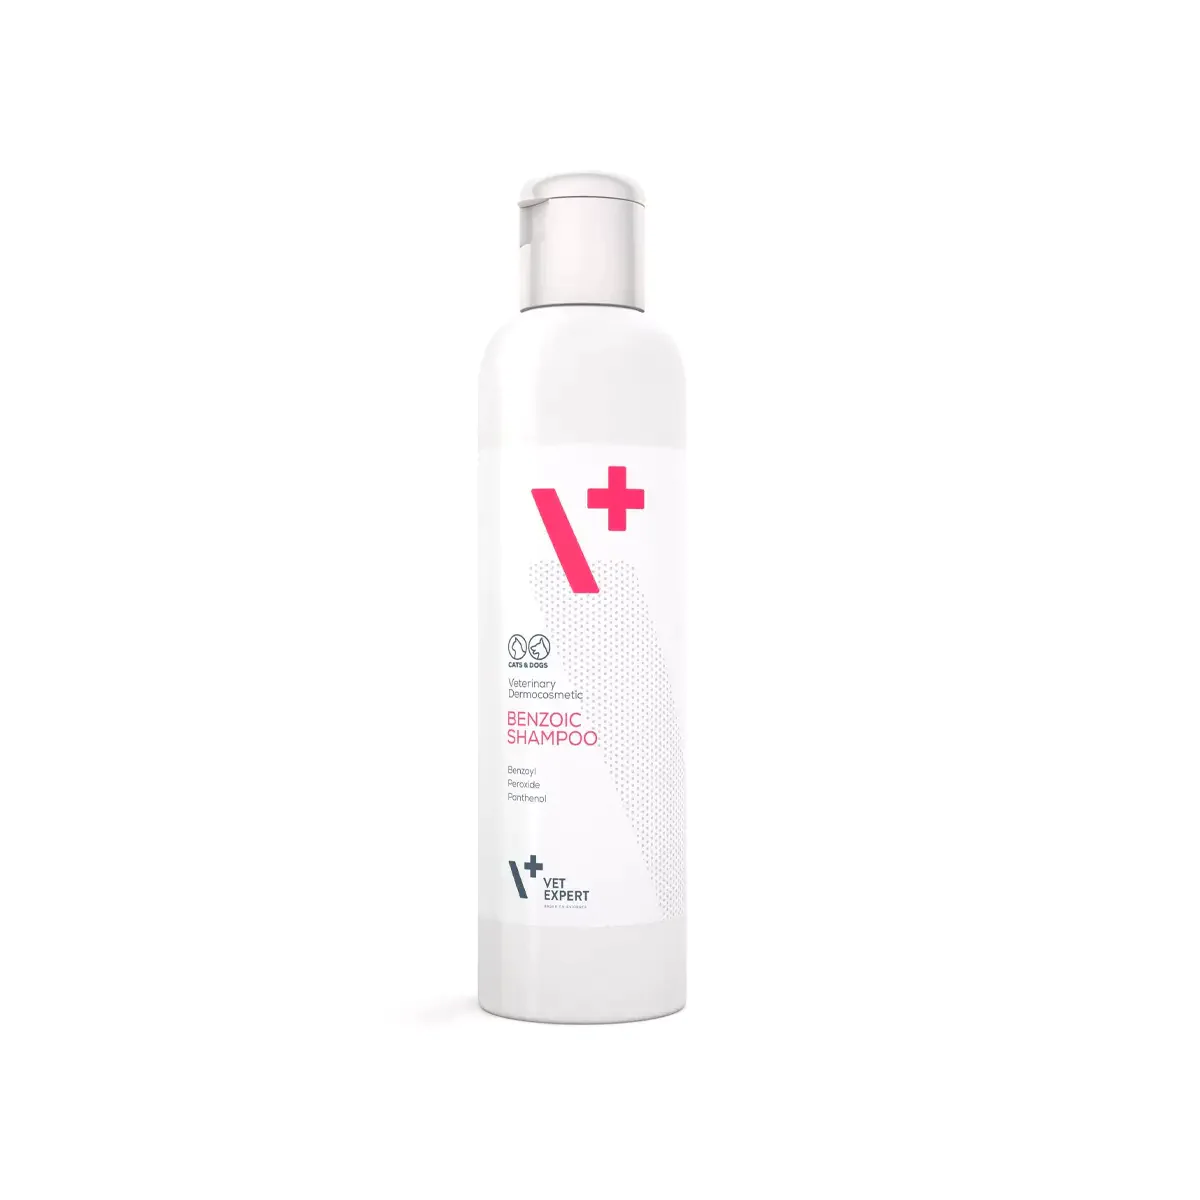 Vet Expert V+ Benzoic Shampoo 250ml